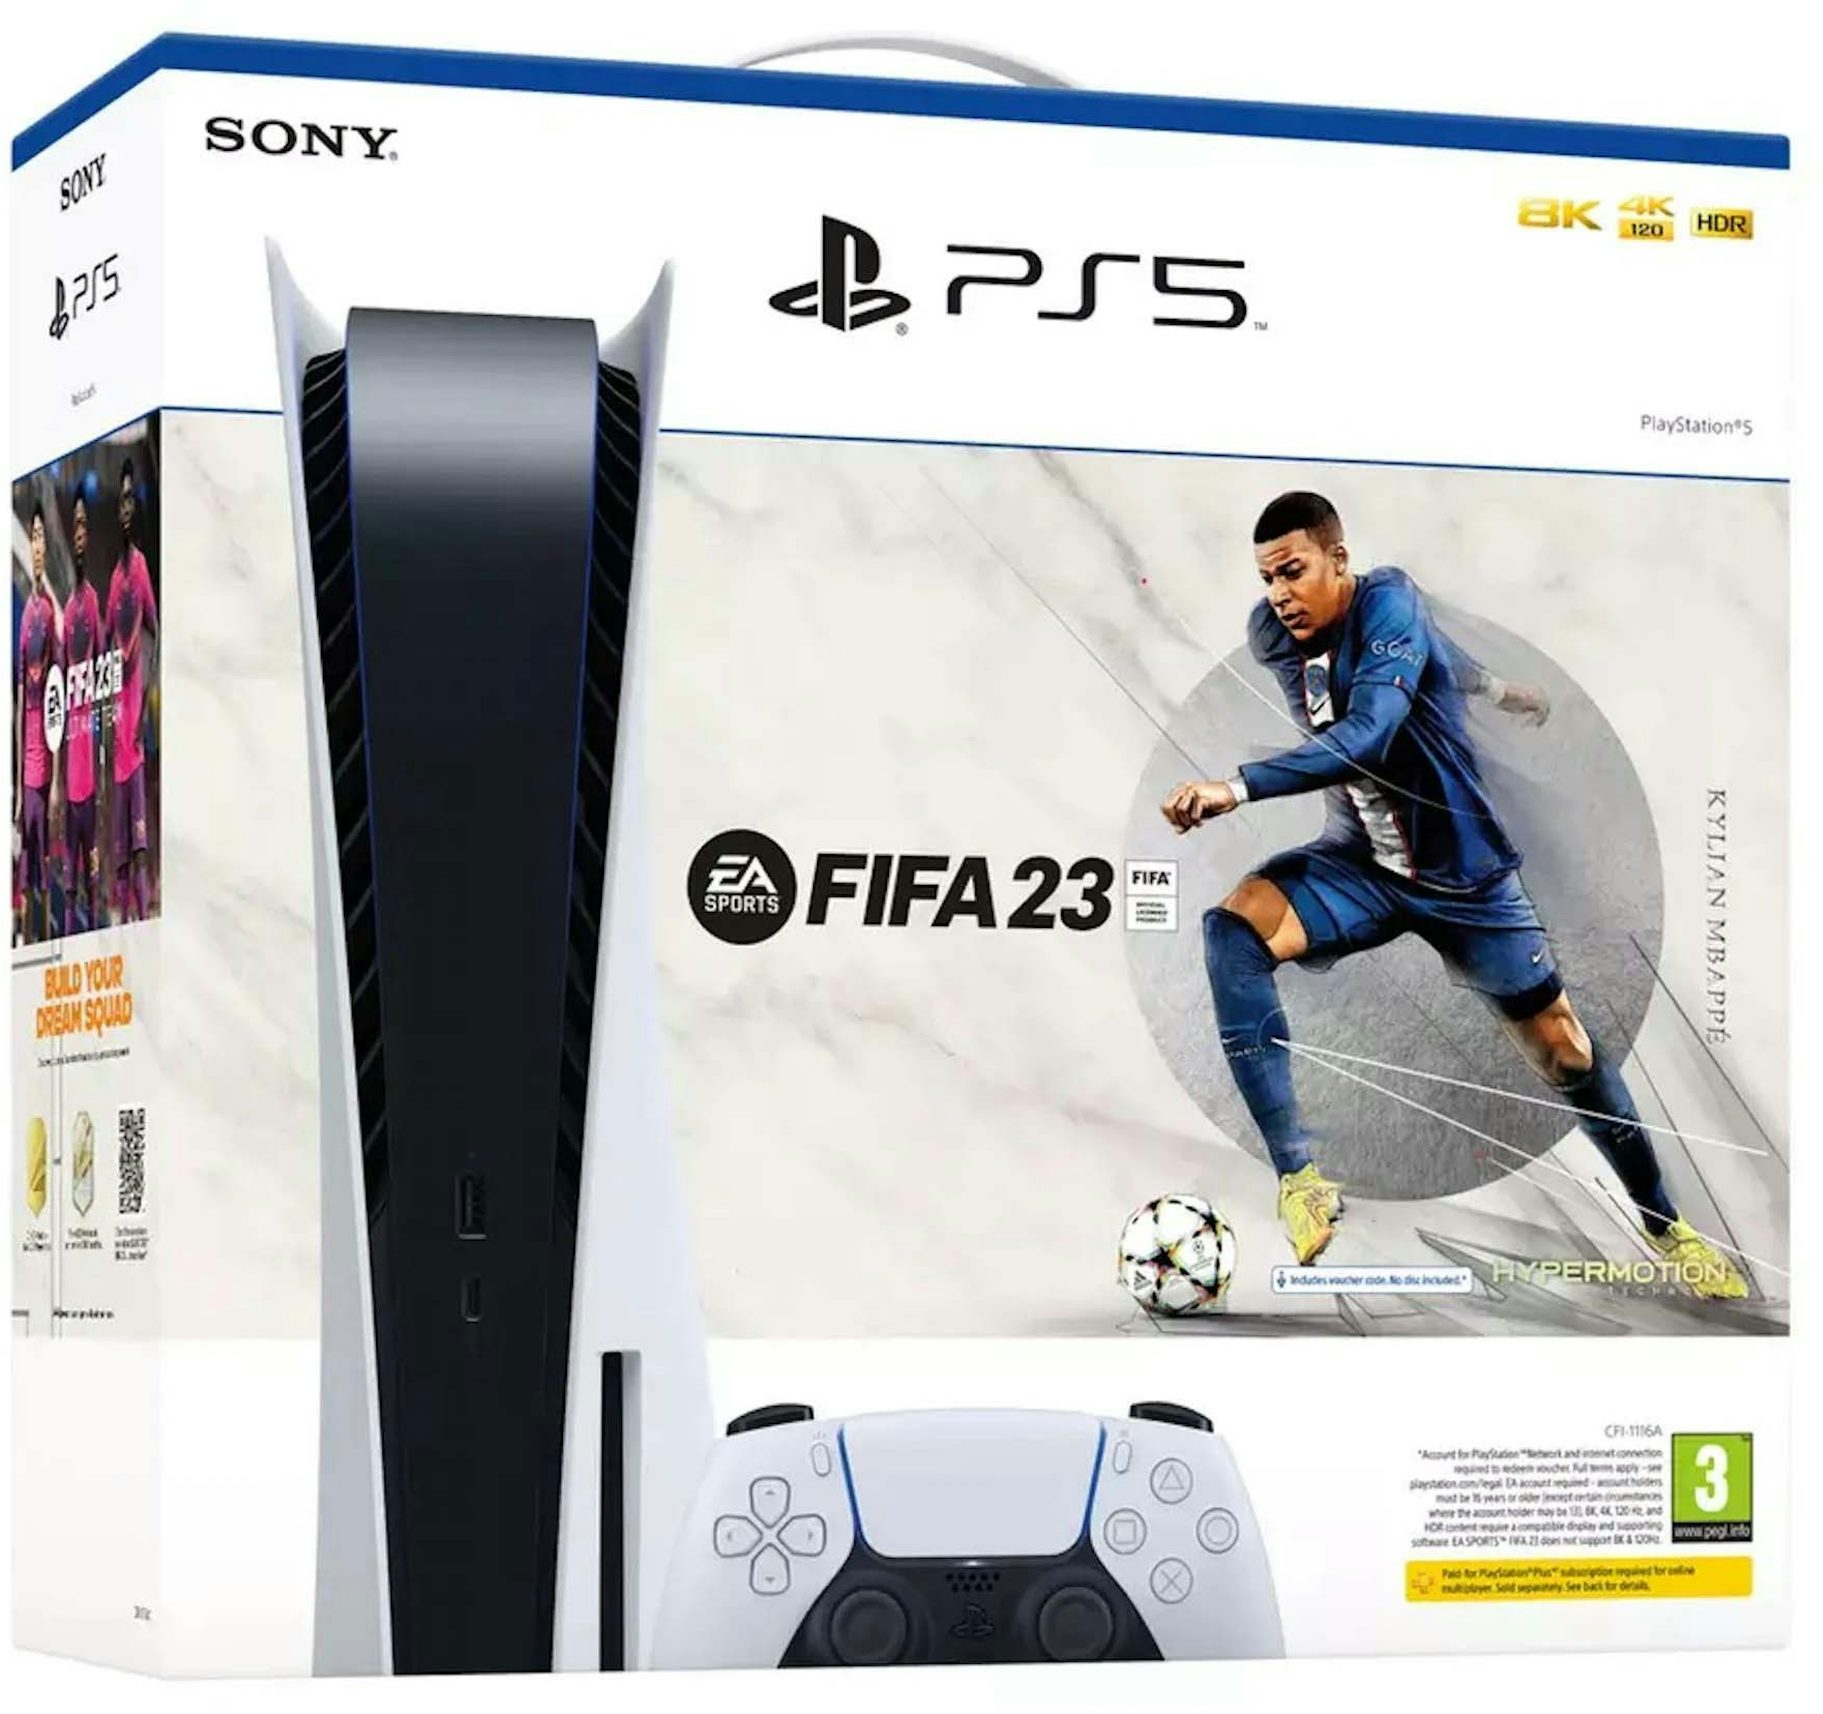 FIFA 23 PlayStation 5 Edition - AA GAMING STORE